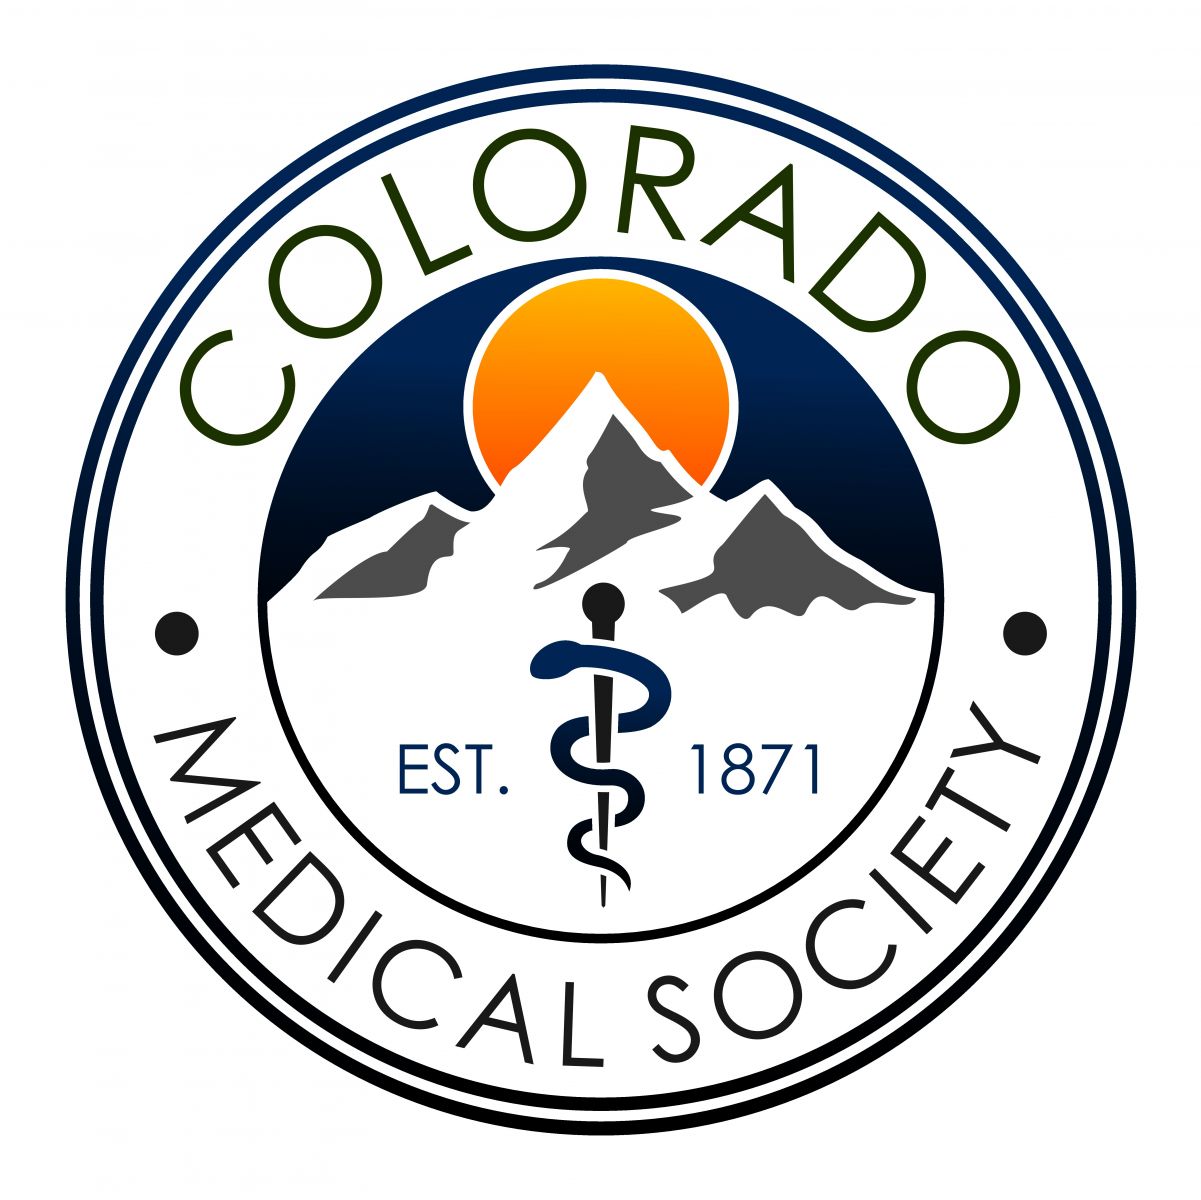 Colorado Medical Society